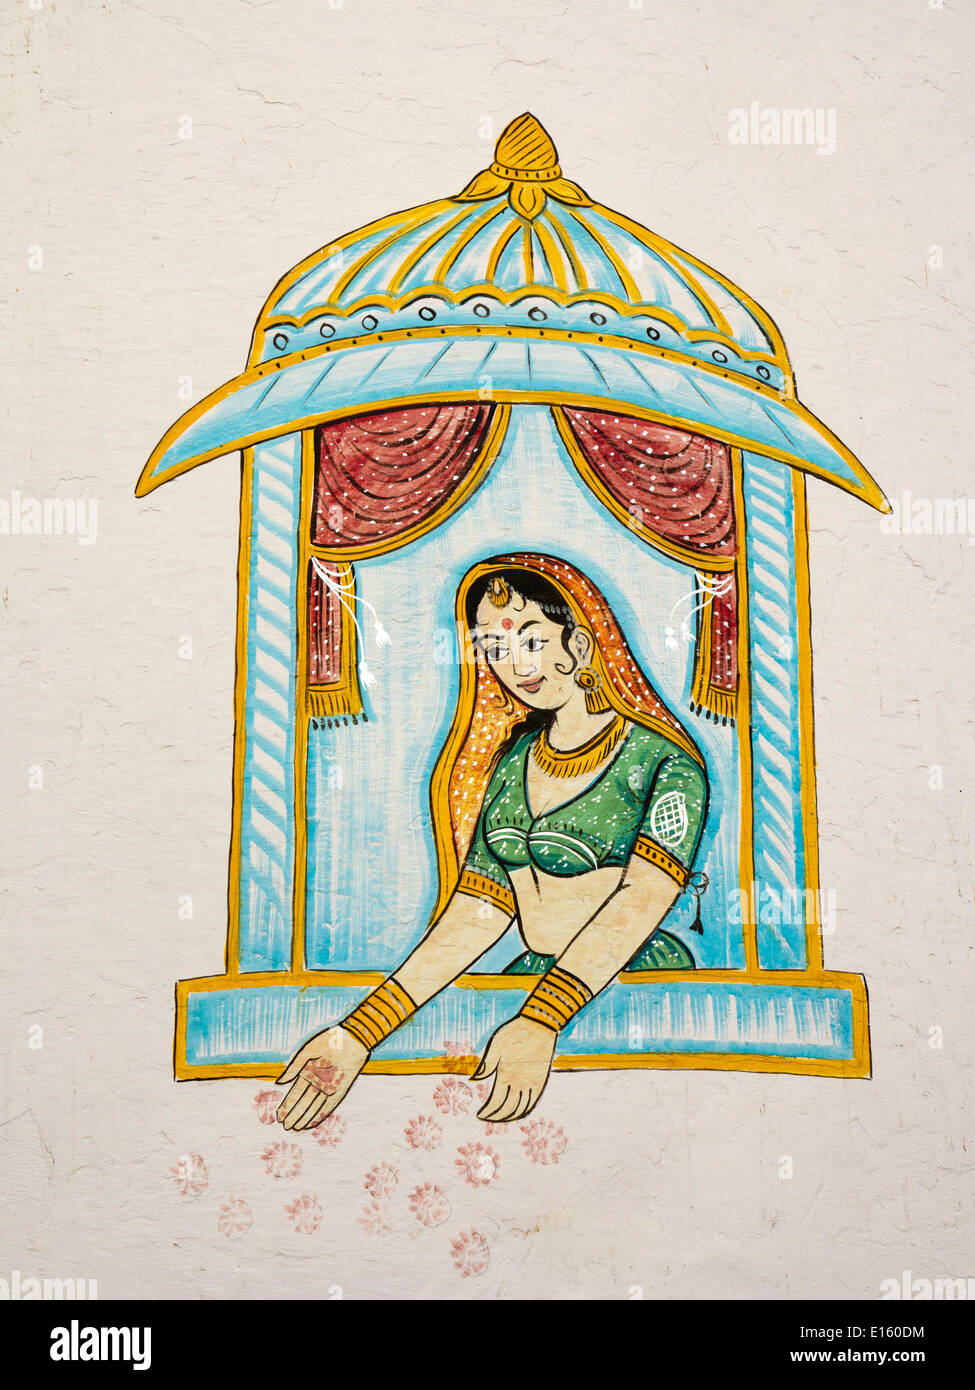 L'Inde, Rajasthan, Udaipur, la peinture murale traditionnelle de femme Rajput, dans la fenêtre de style Moghol Banque D'Images